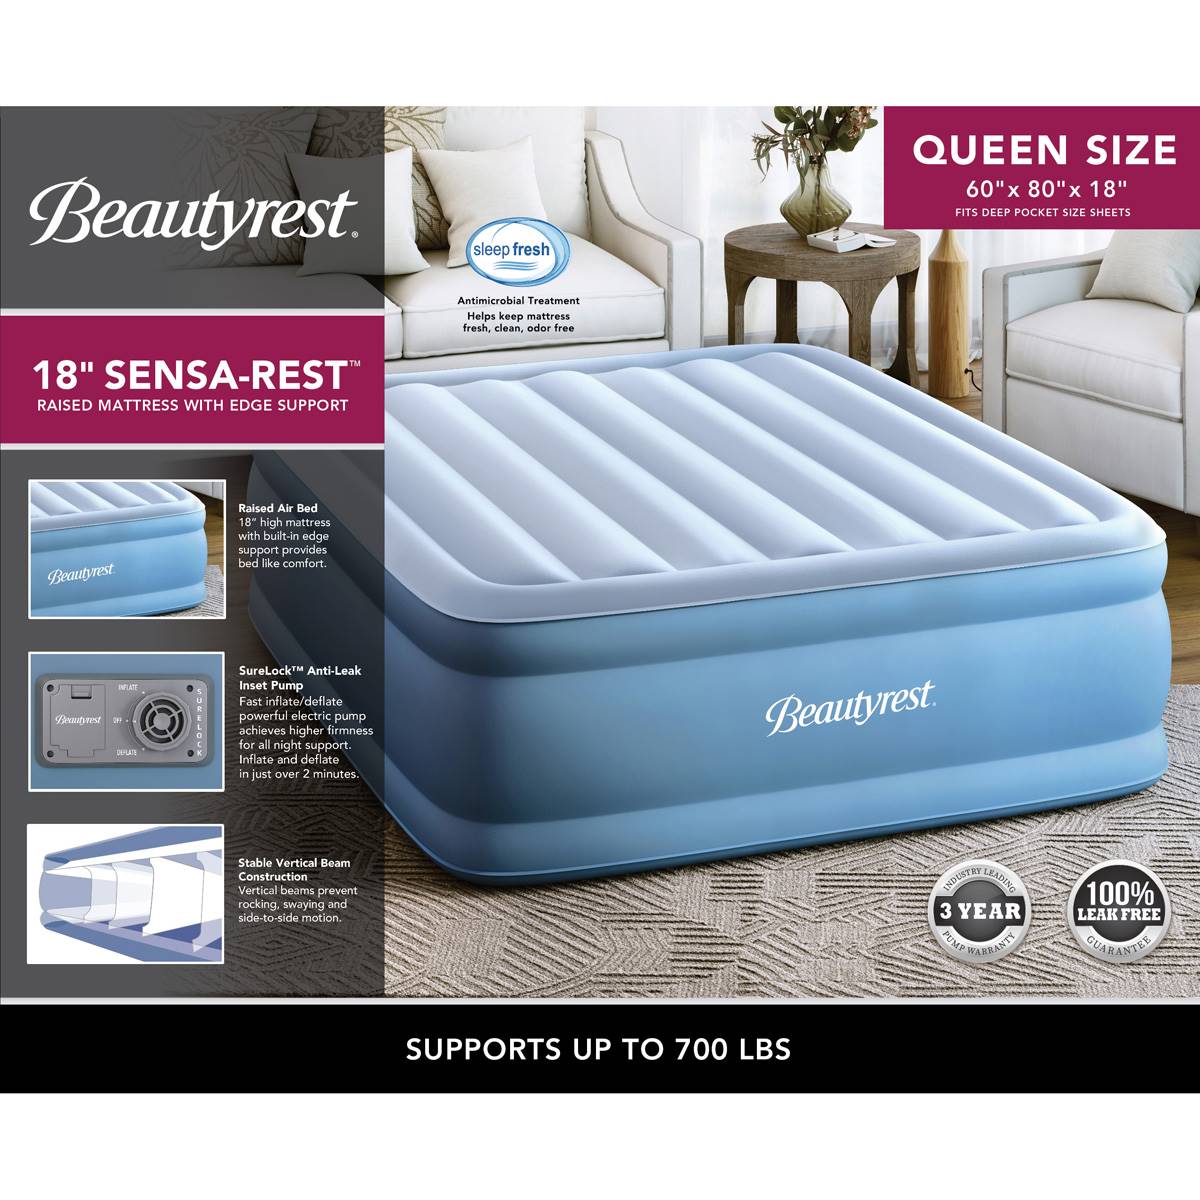 Beautyrest(R) Sensa-Rest(tm) Queen Air Bed Mattress